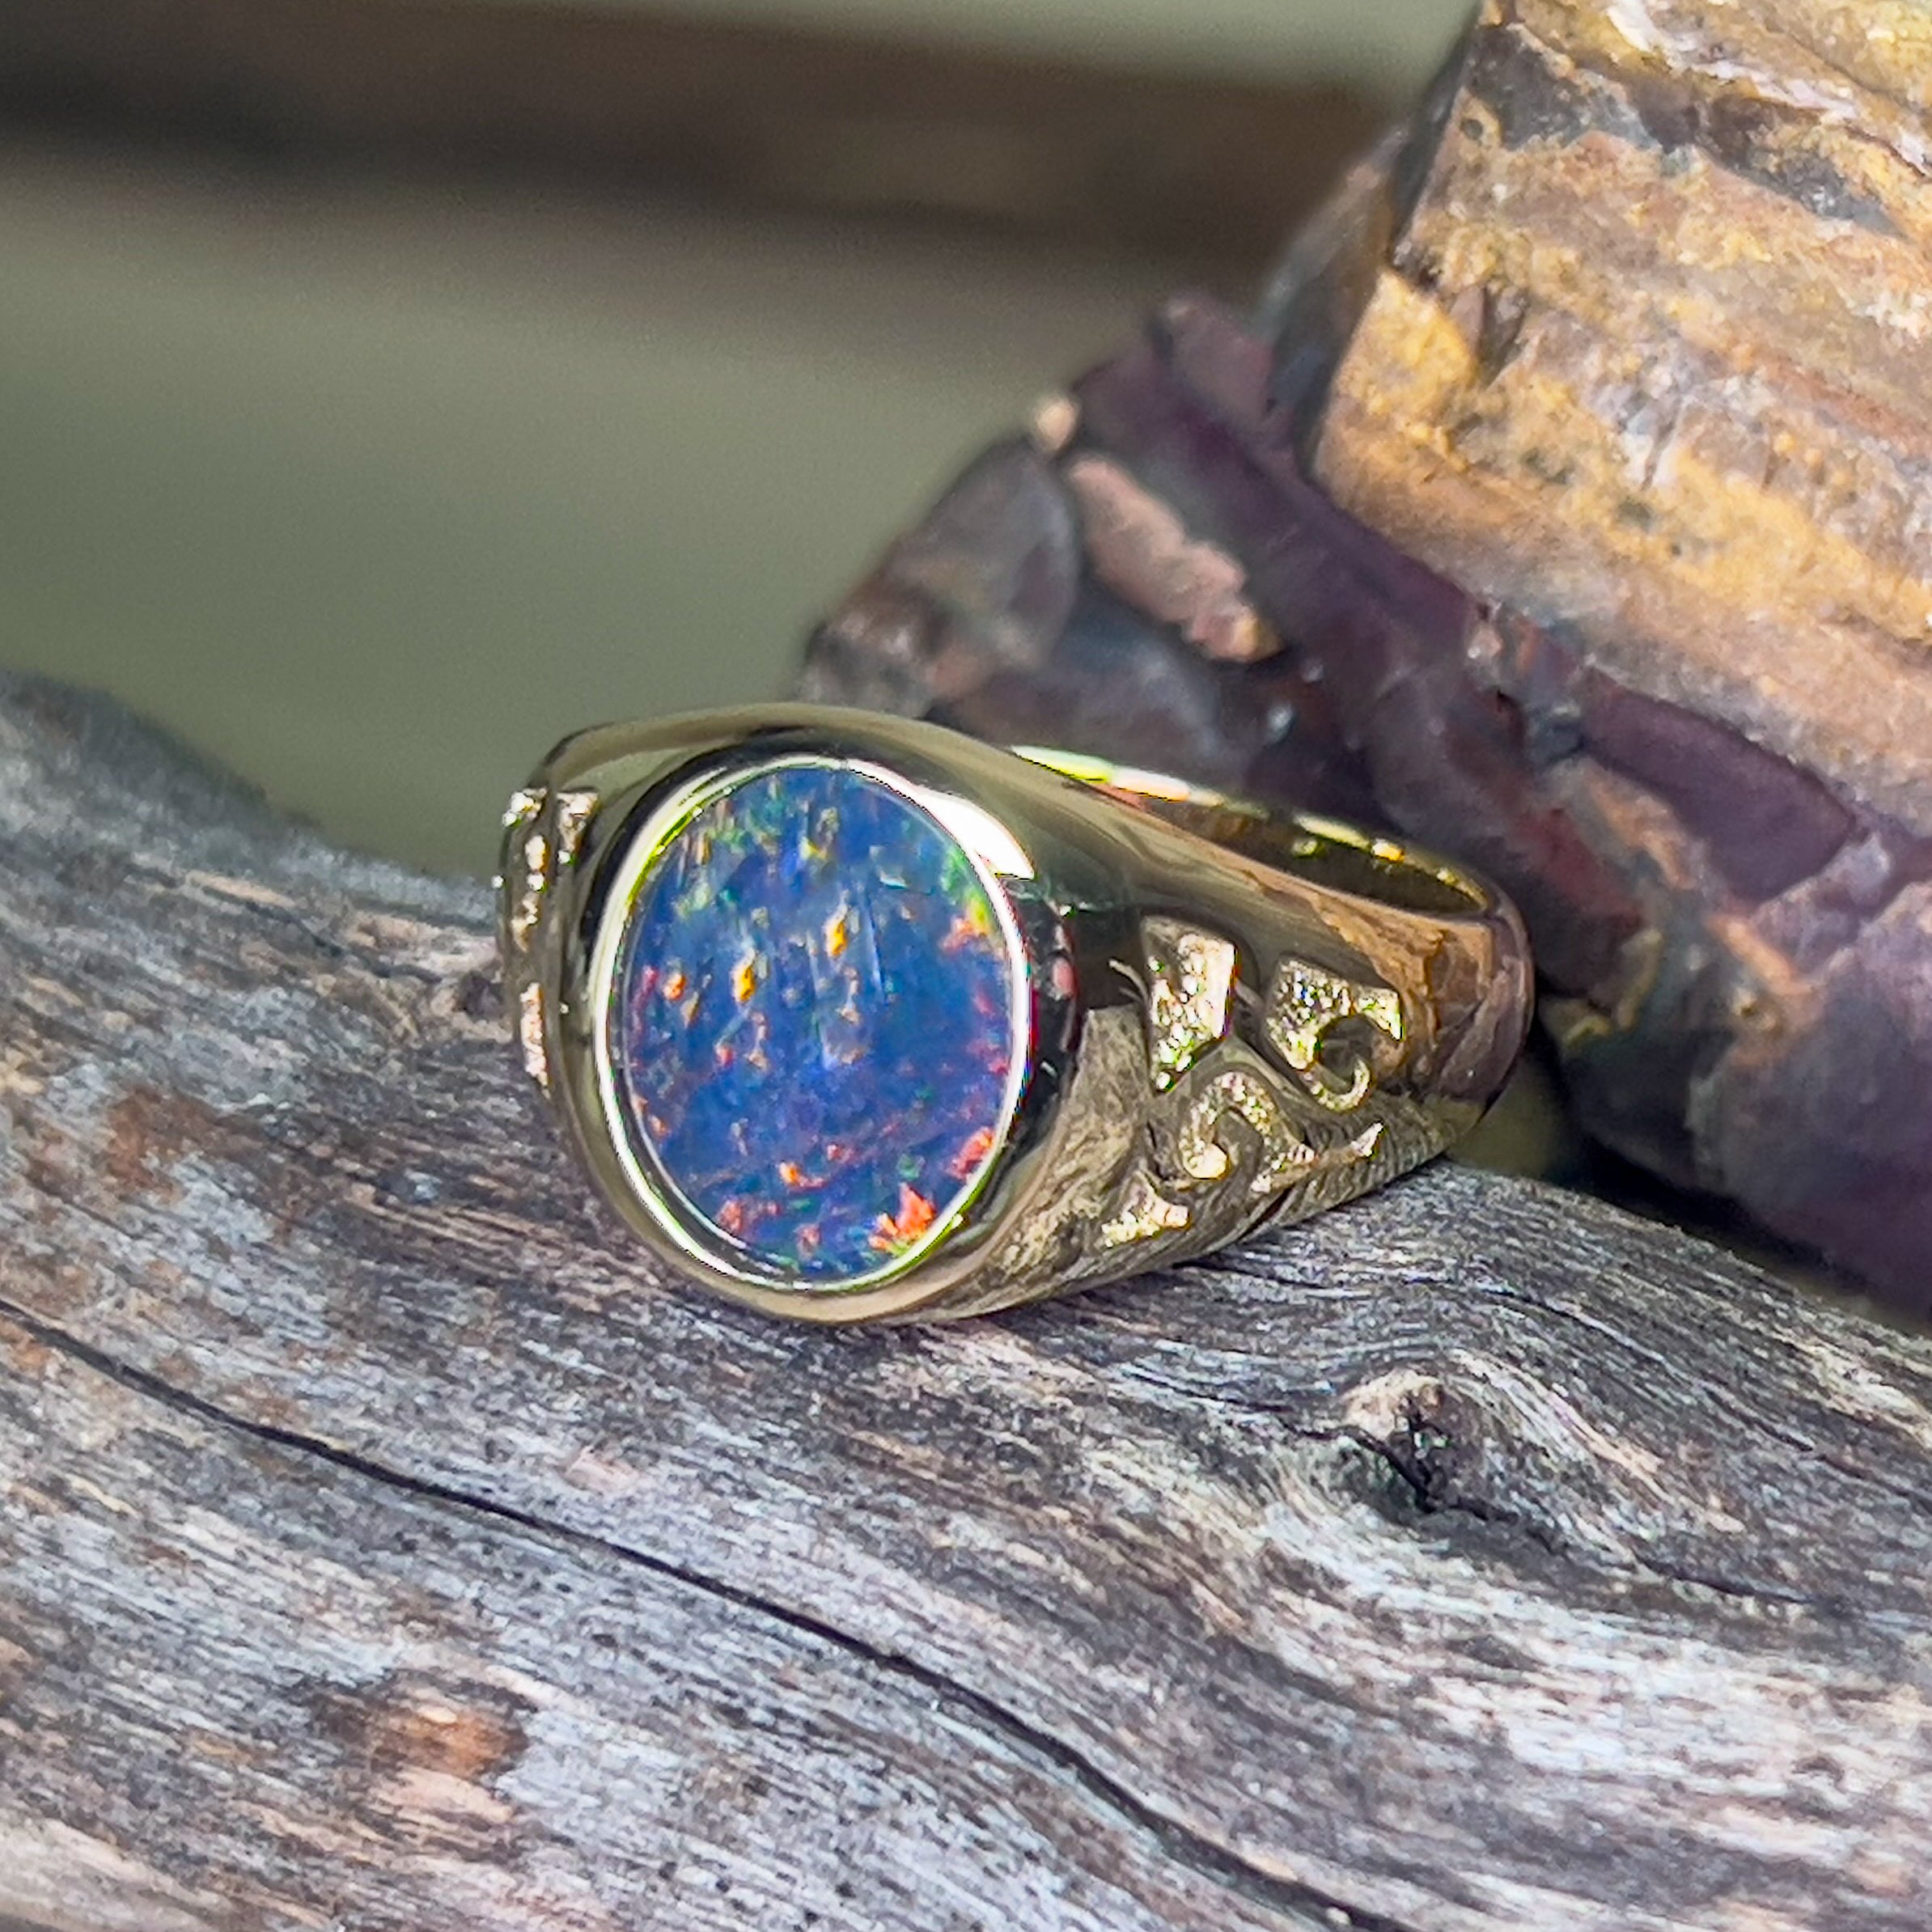 9kt Yellow Gold 12x10mm Opal triplet signet patterned ring - Masterpiece Jewellery Opal & Gems Sydney Australia | Online Shop